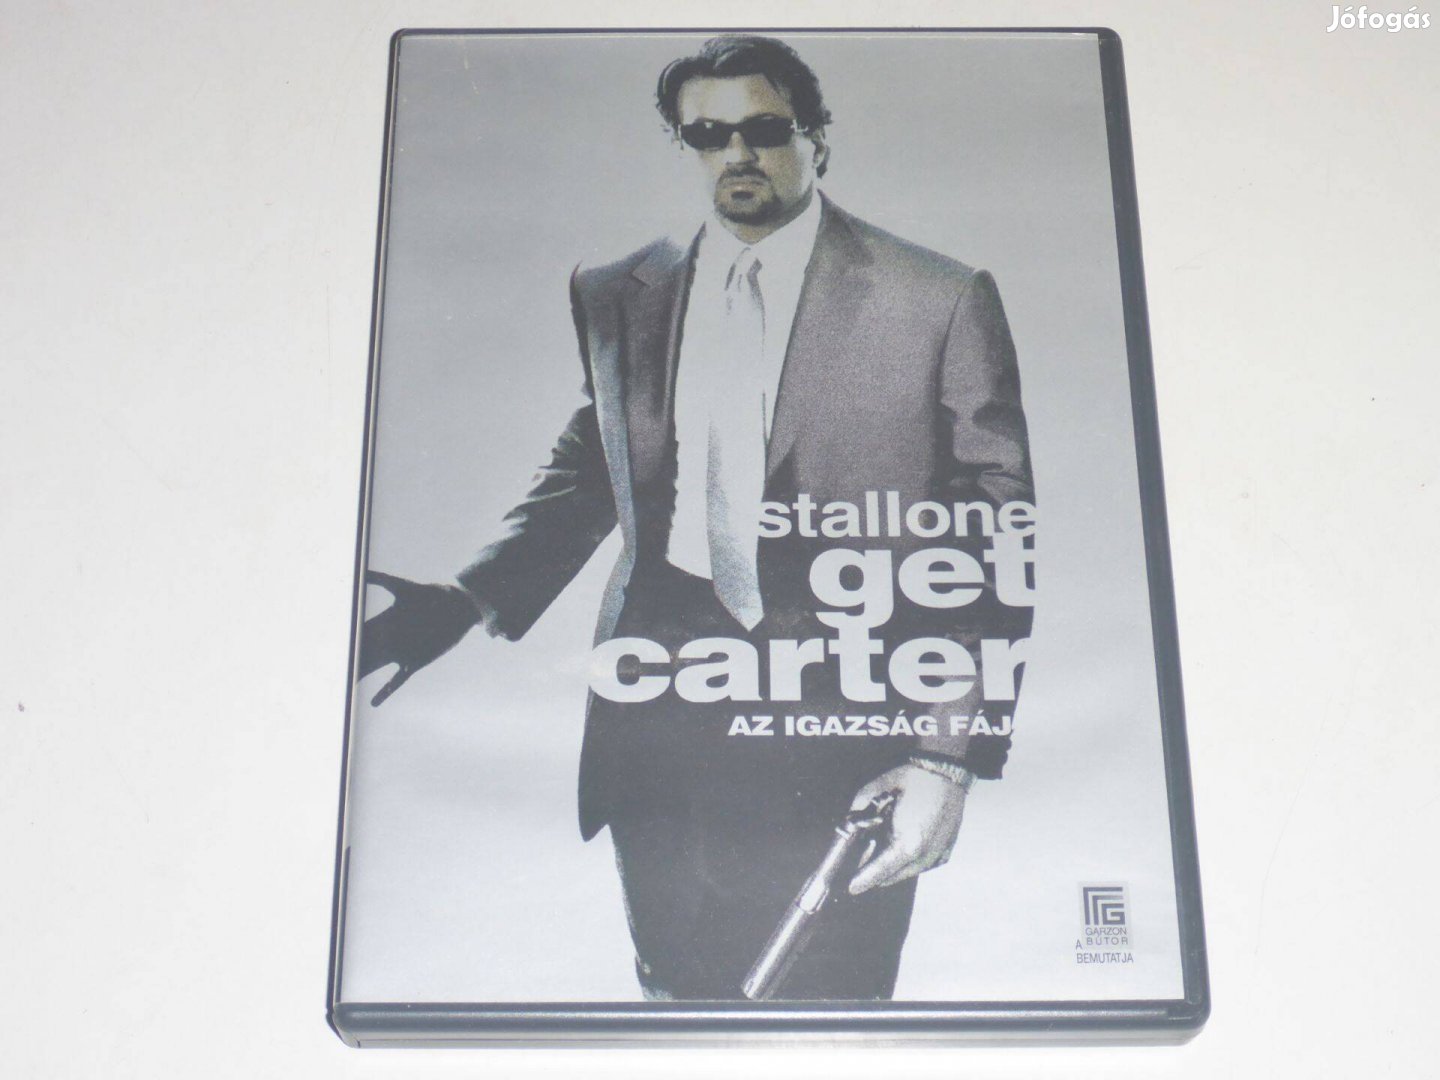 Get Carter - Az igazság fáj DVD film /